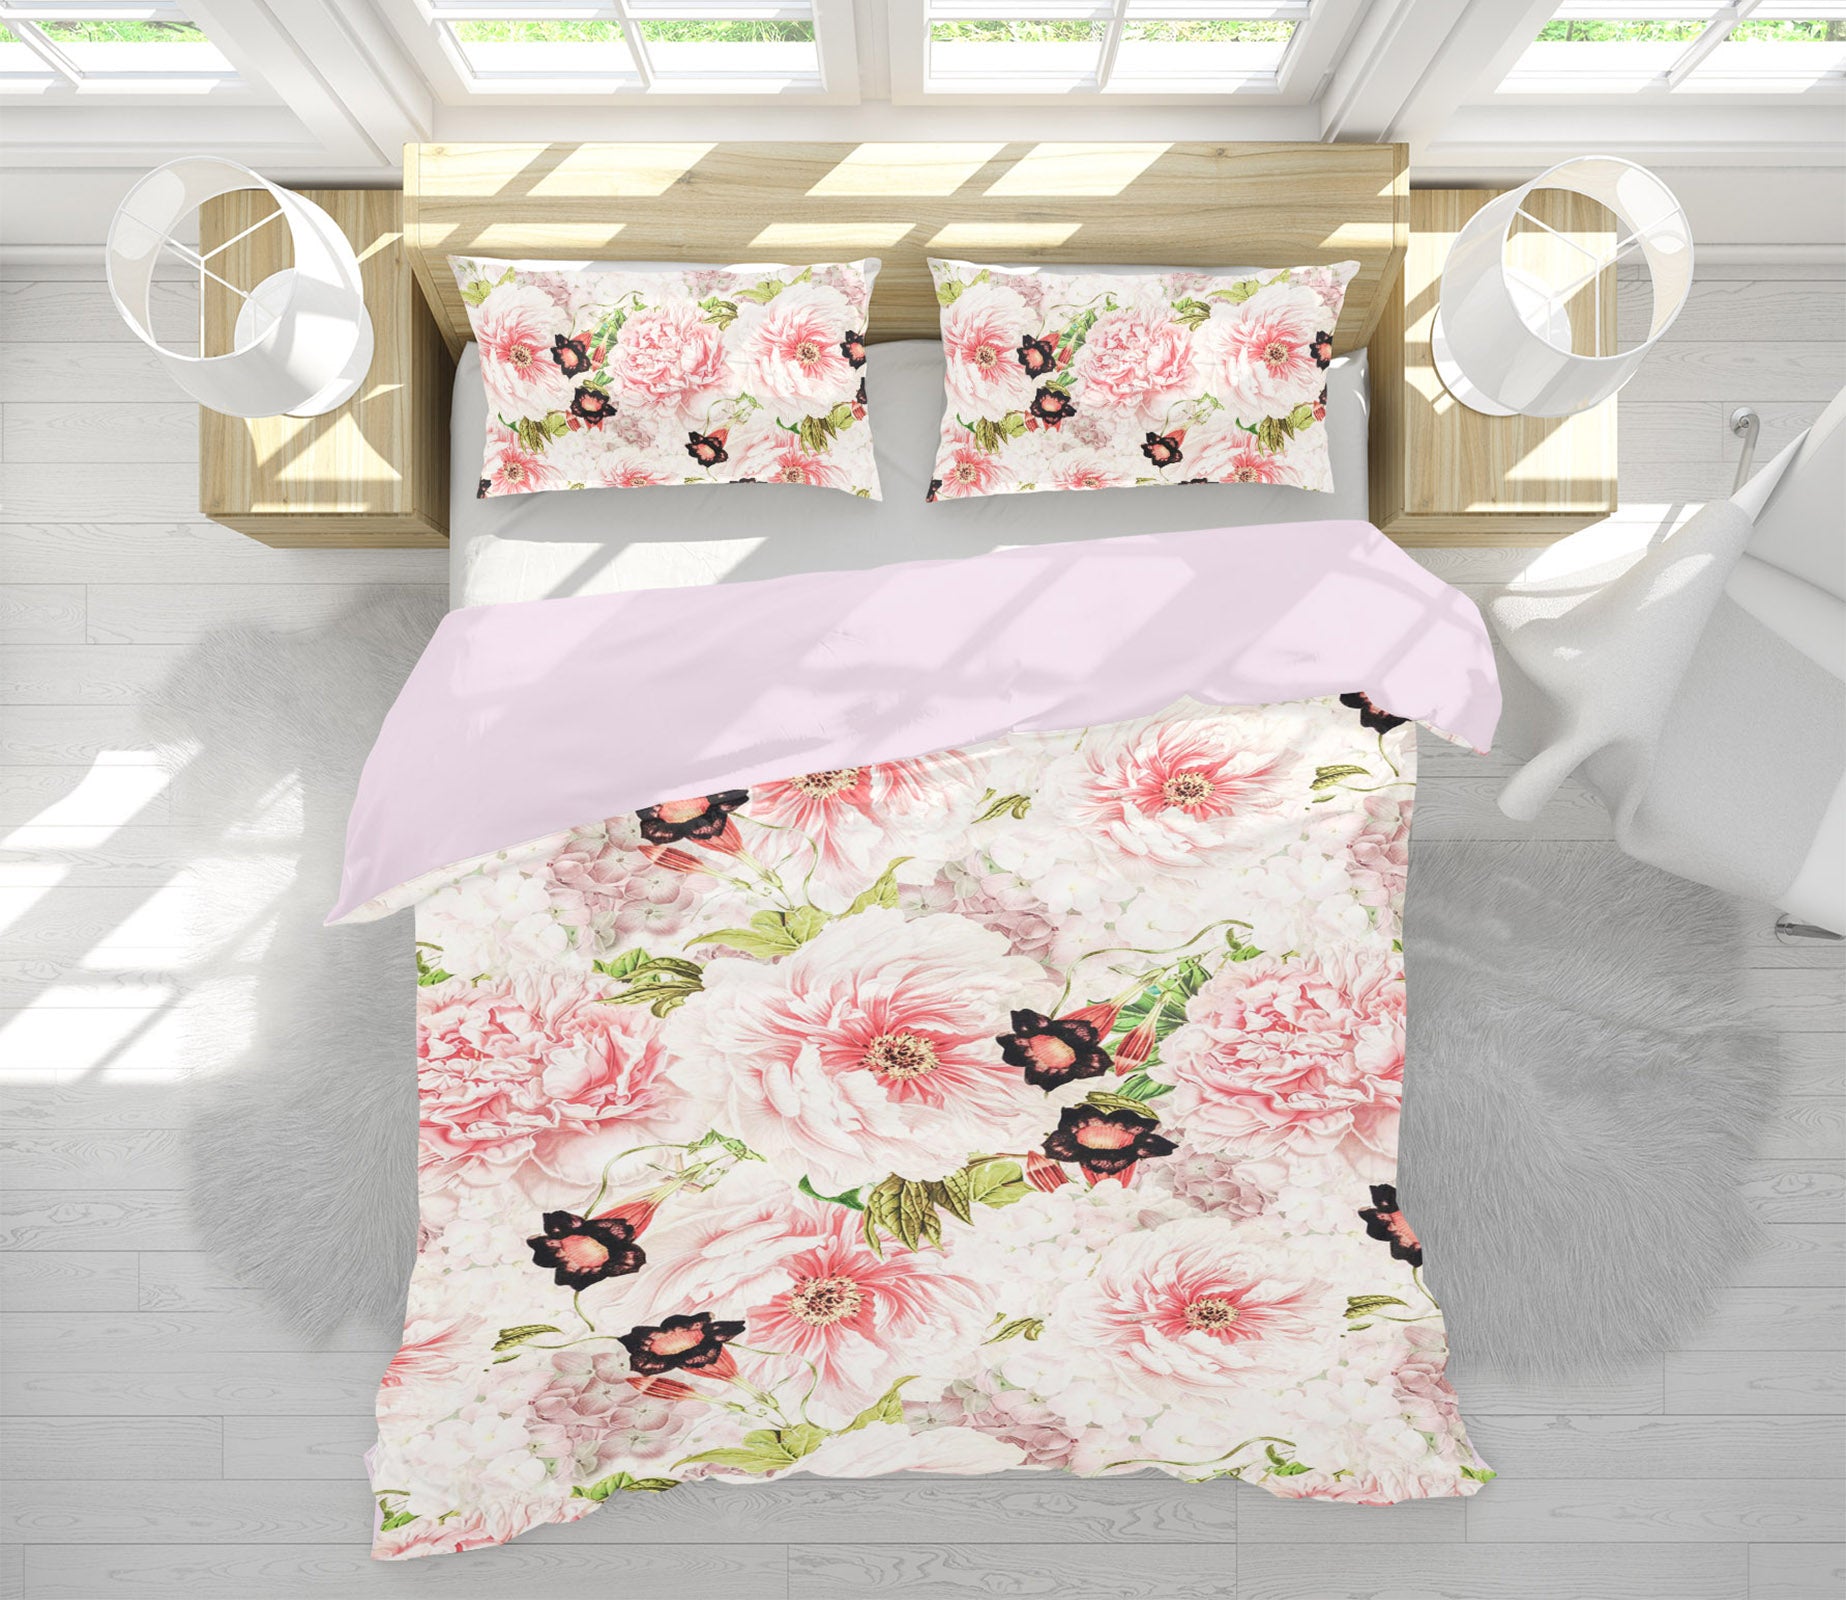 3D Pink Trumpet Flower 134 Uta Naumann Bedding Bed Pillowcases Quilt